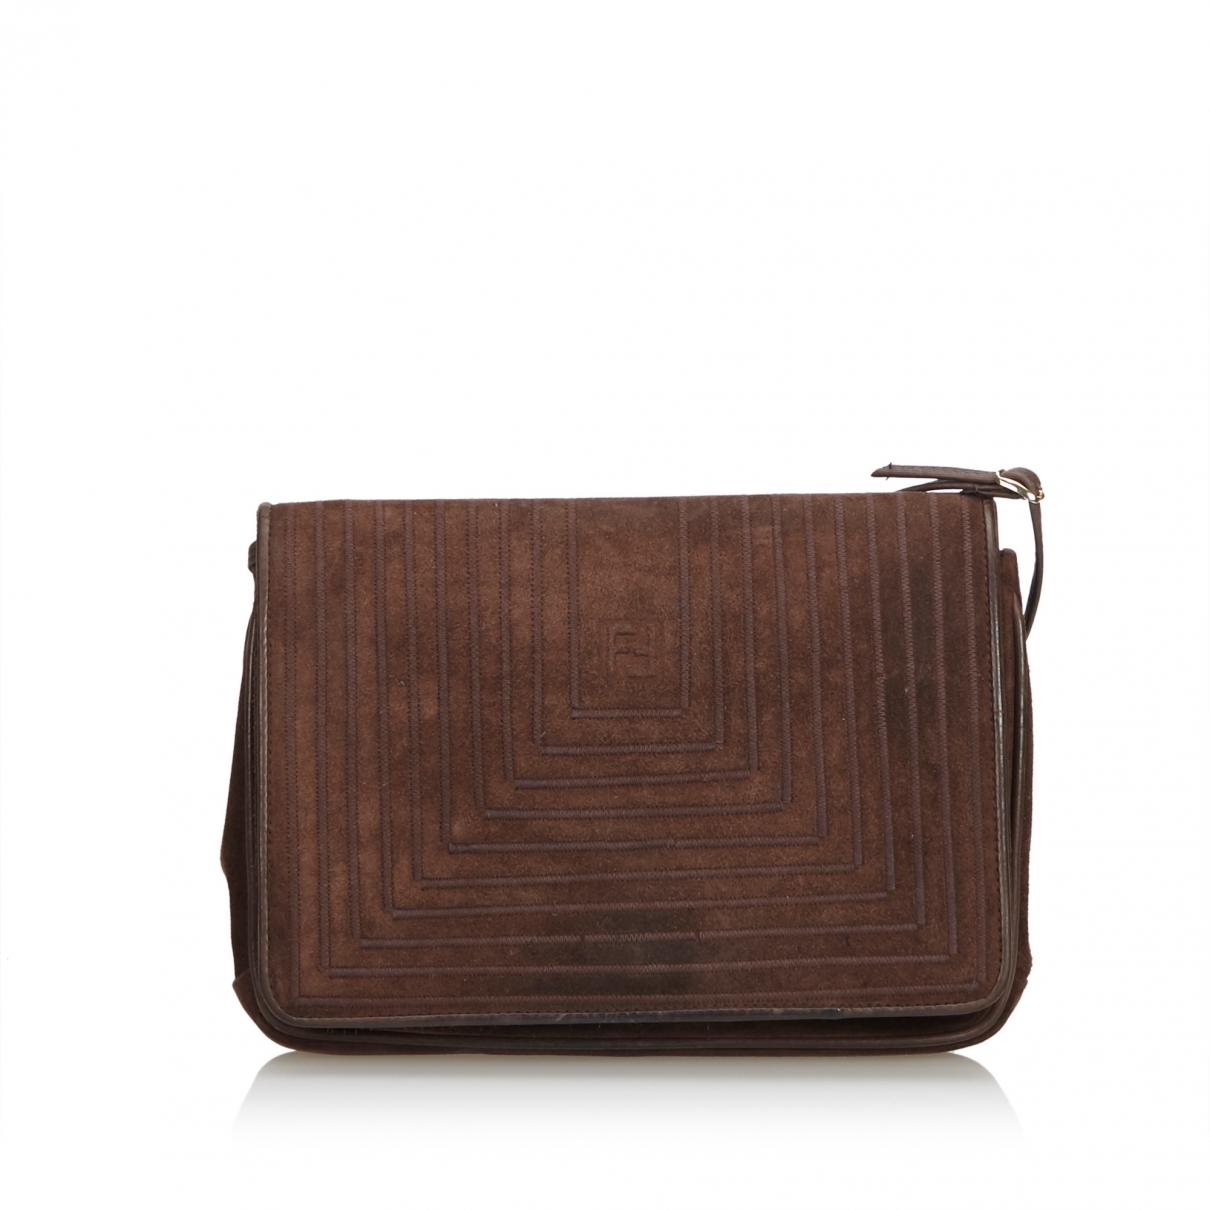 Lyst - Fendi Pre-owned Brown Suede Handbags in Brown